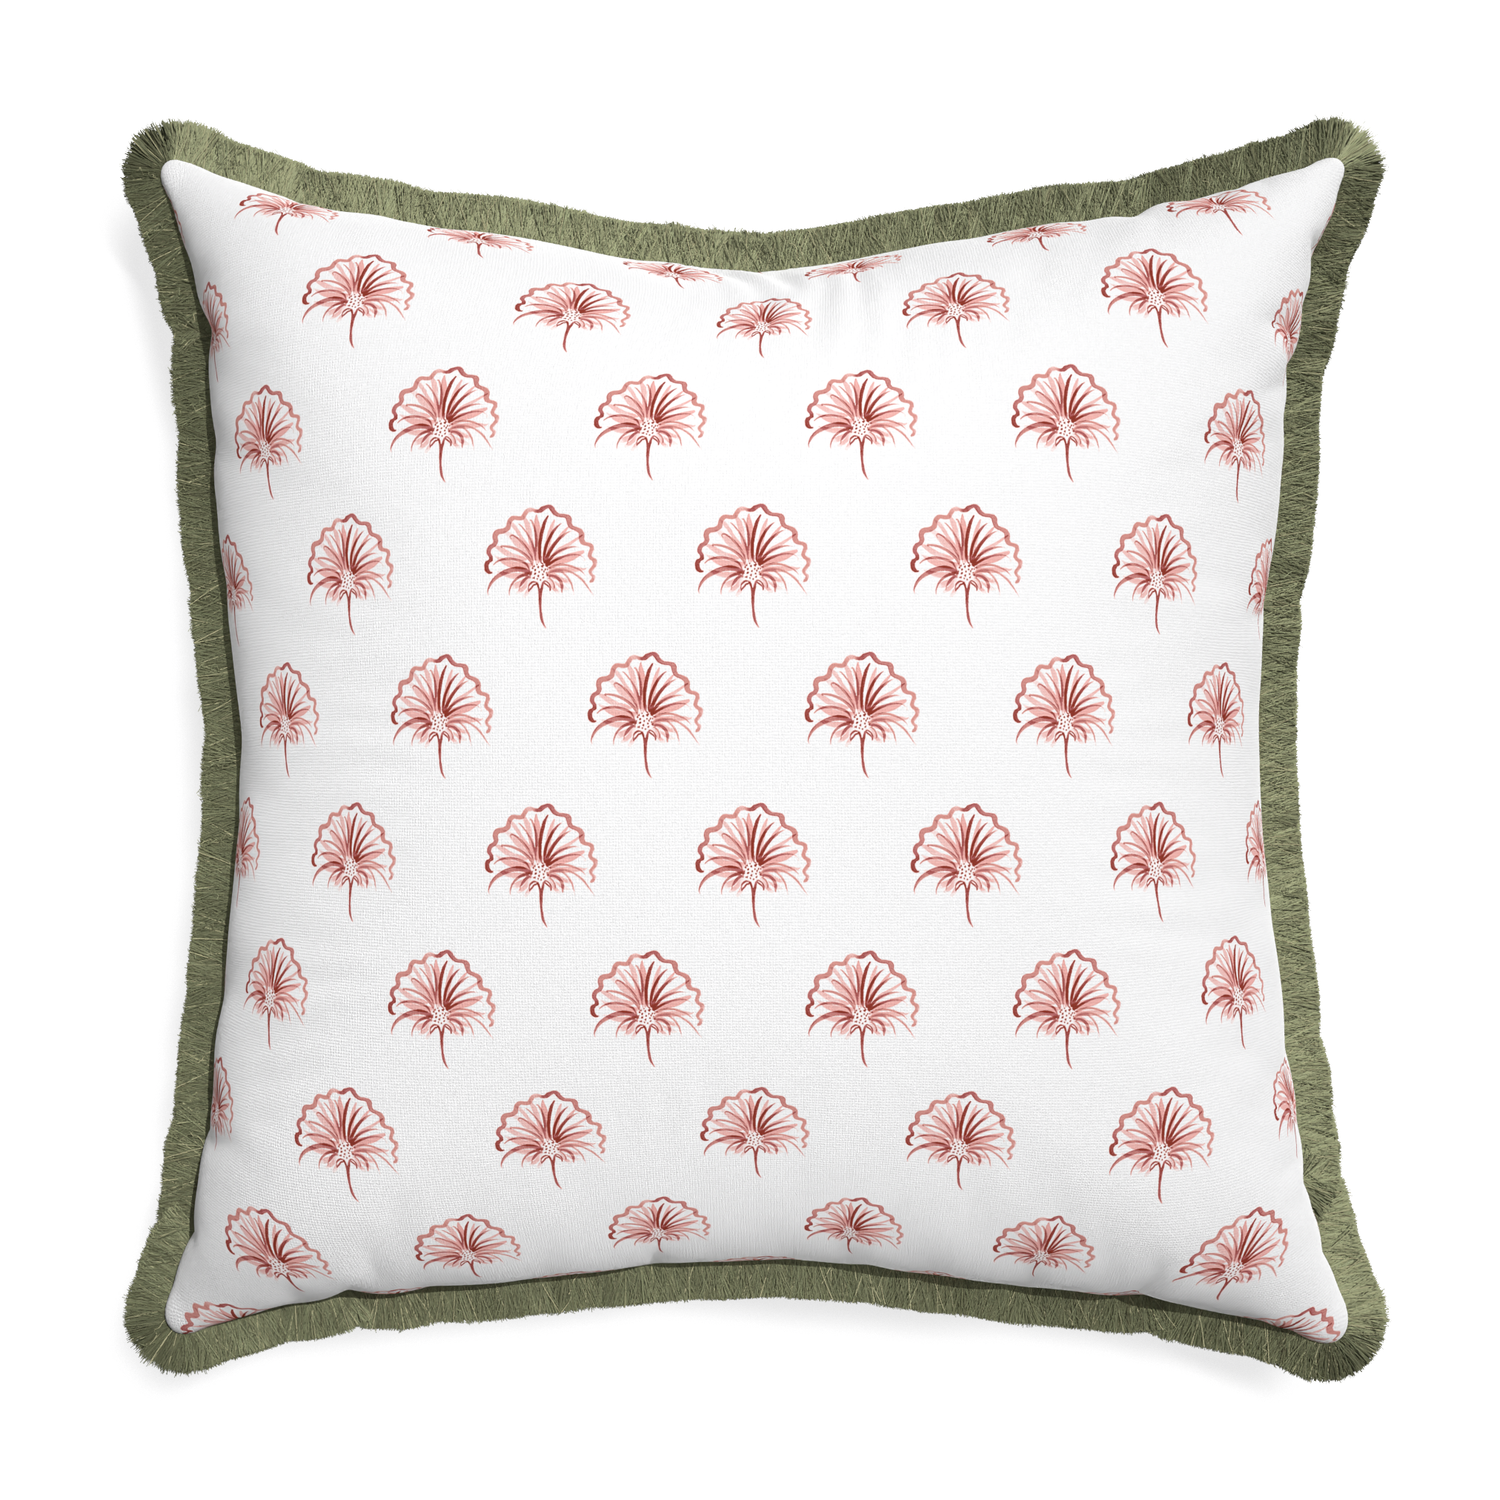 Euro-sham penelope rose custom pillow with sage fringe on white background